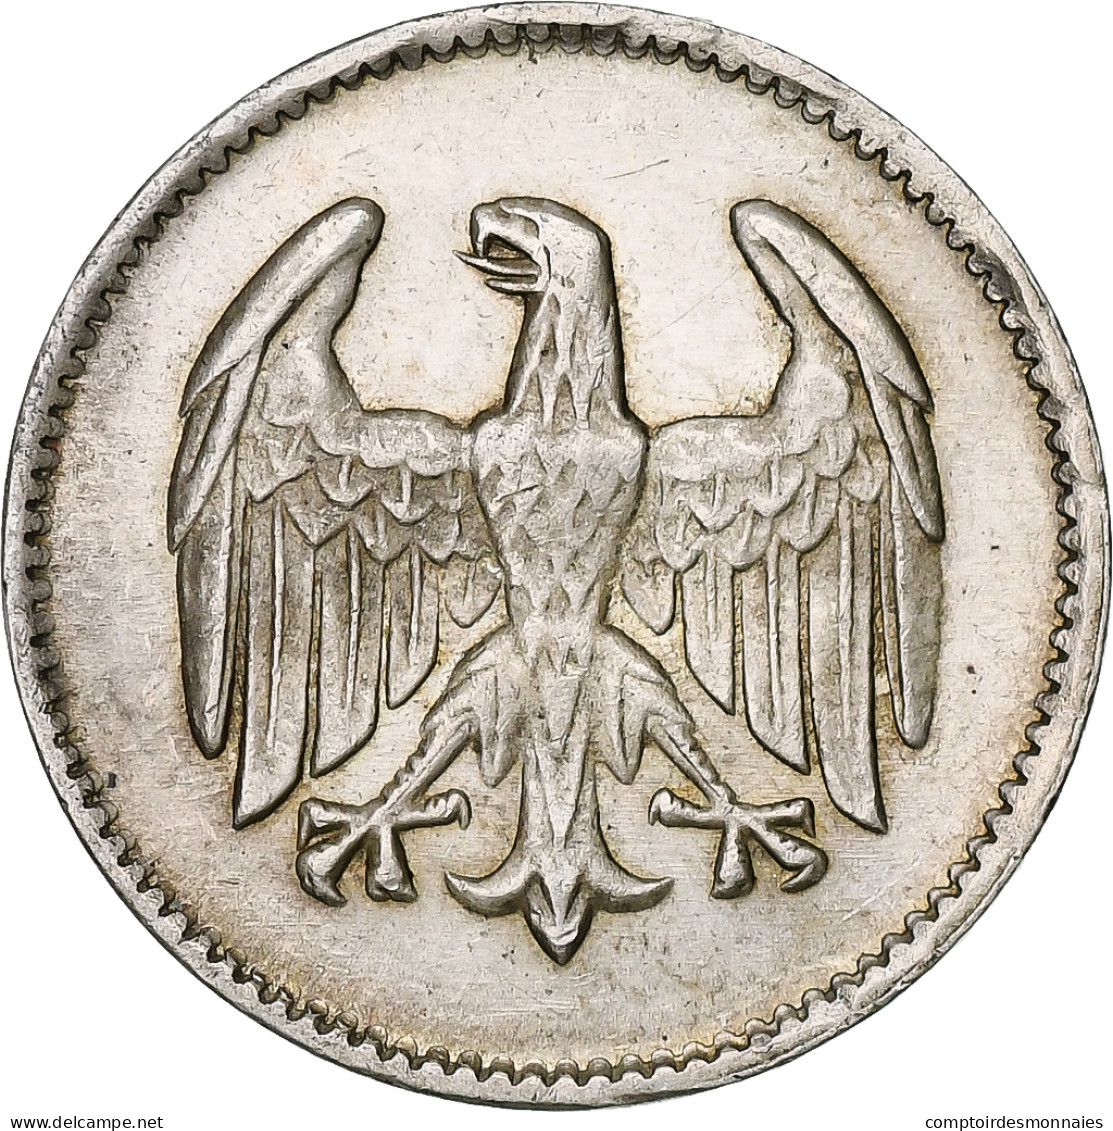 Allemagne, République De Weimar, 1 Mark 1924 F, KM 42 - 1 Mark & 1 Reichsmark